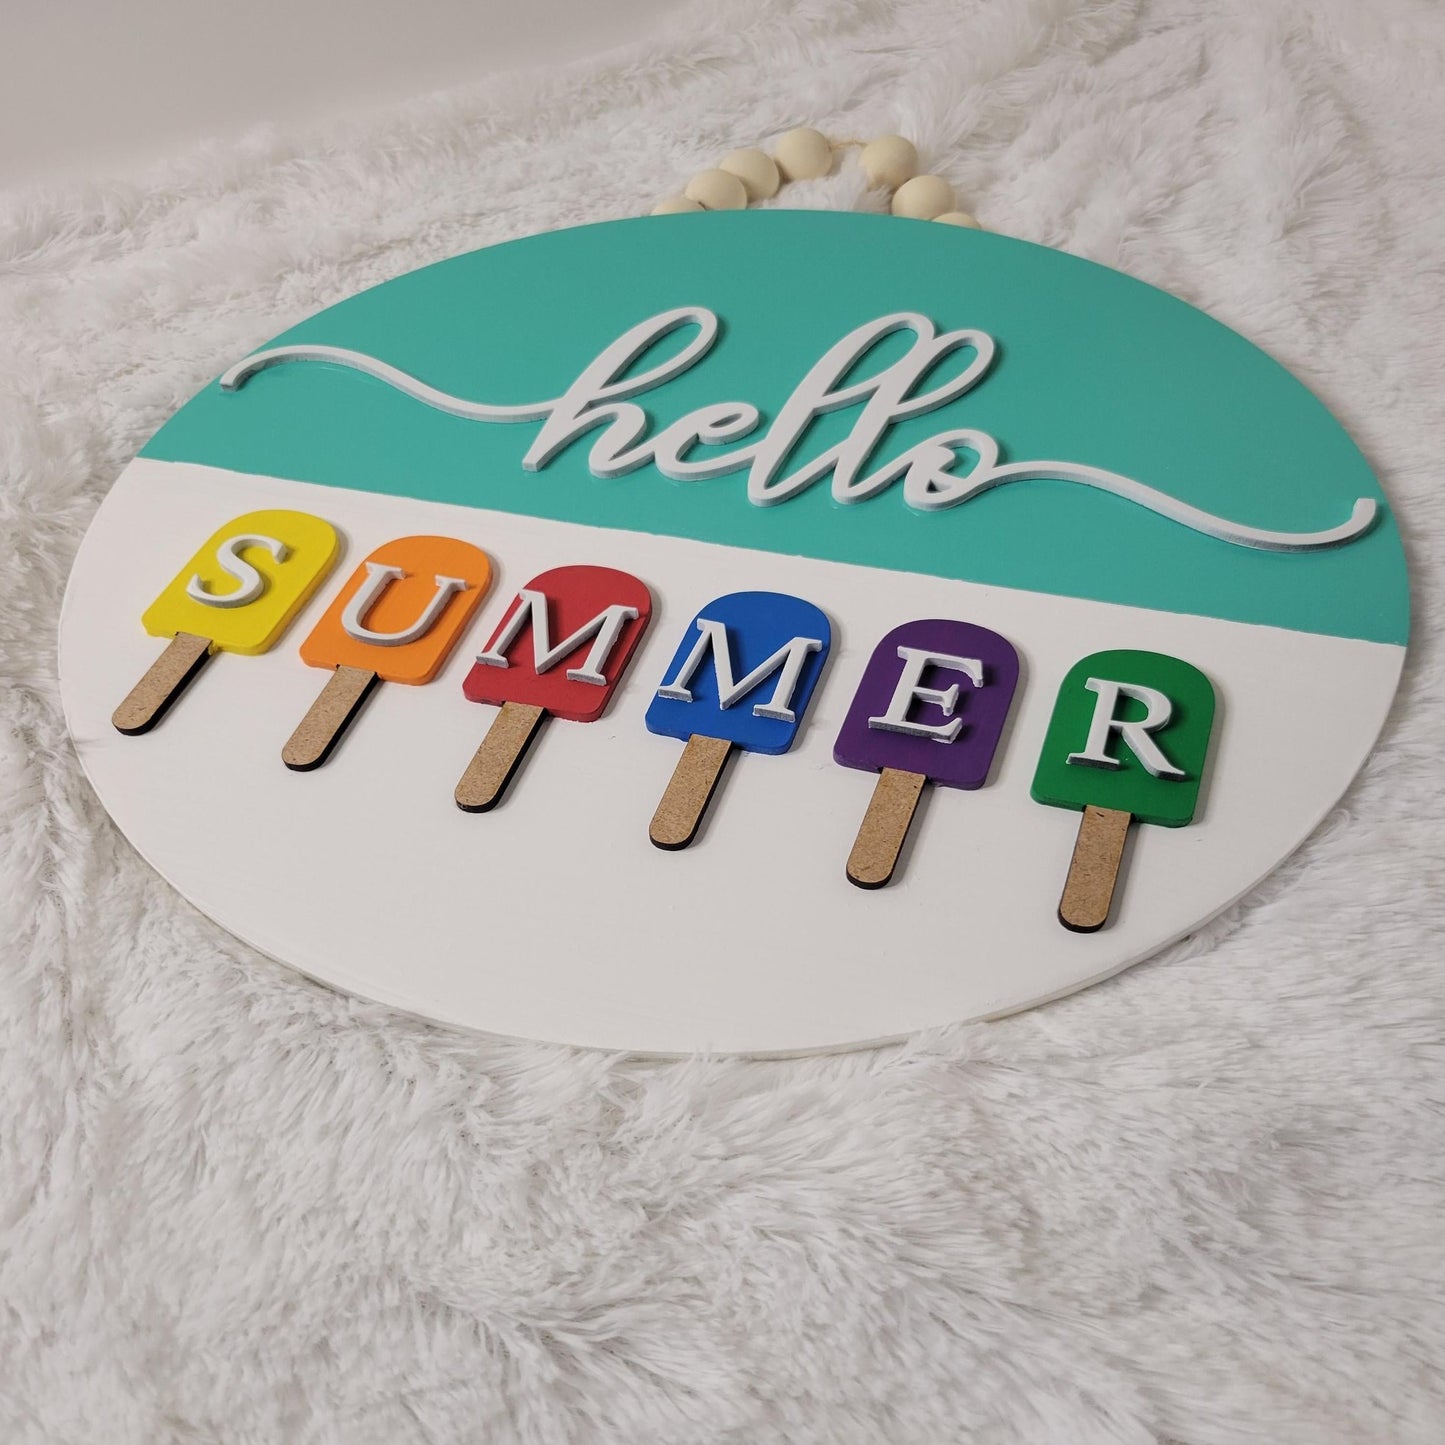 hello summer door hanger